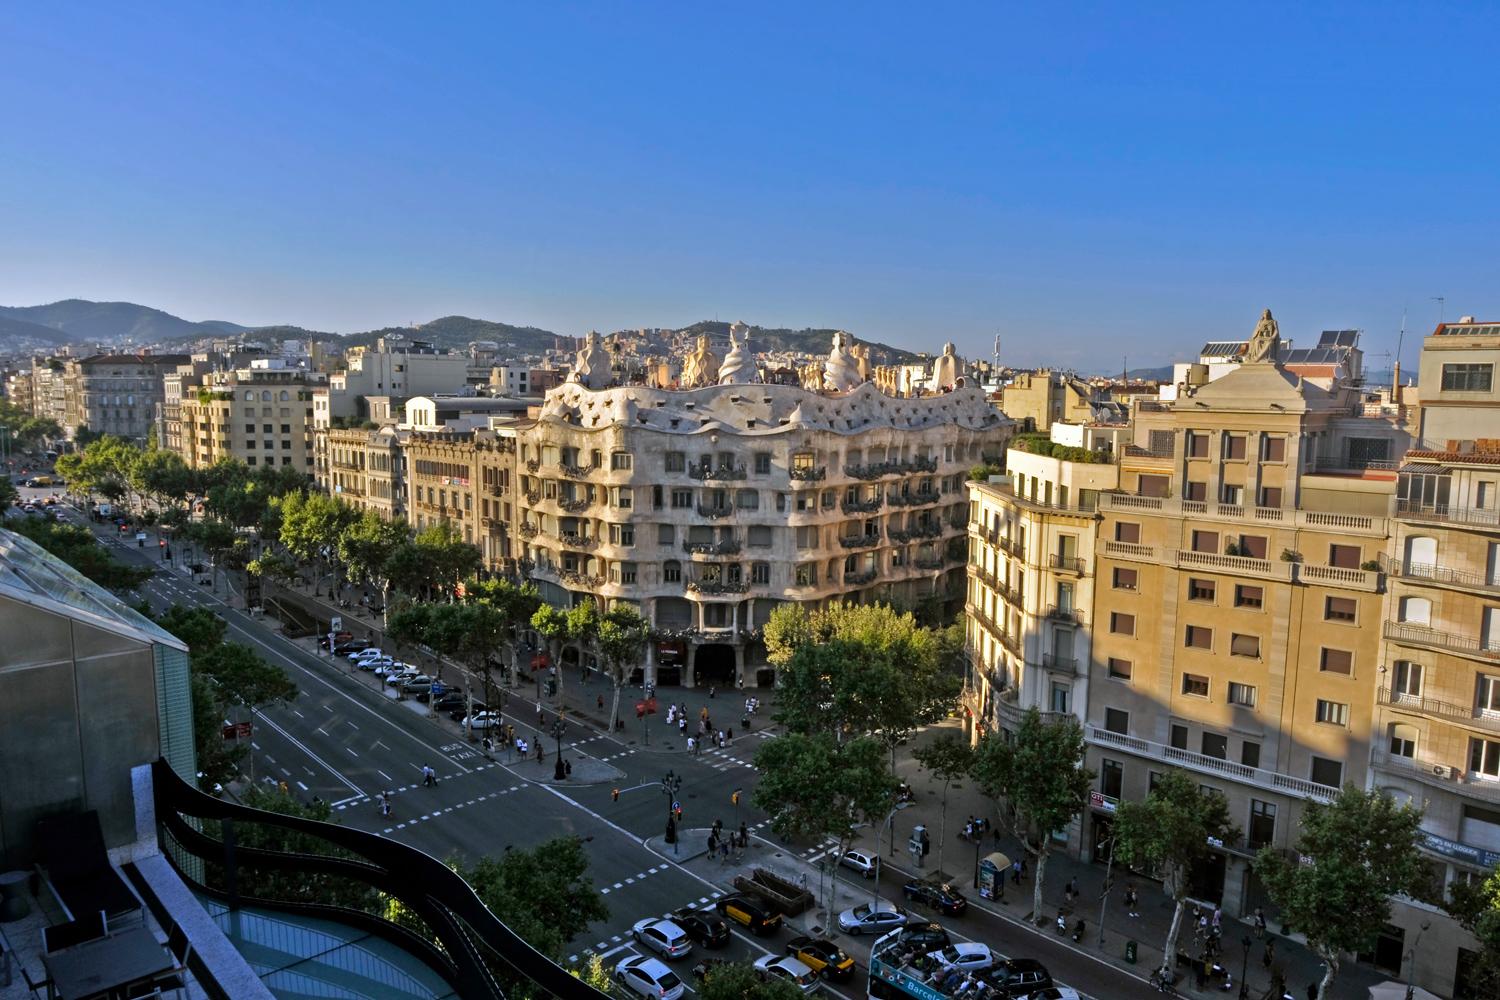 La Casa Milà, conocida como La Pedrera, es un edificio de estilo modernista diseñado por Antoni Gaudí, y construido entre 1906 y 1910 en el paseo de Gracia.